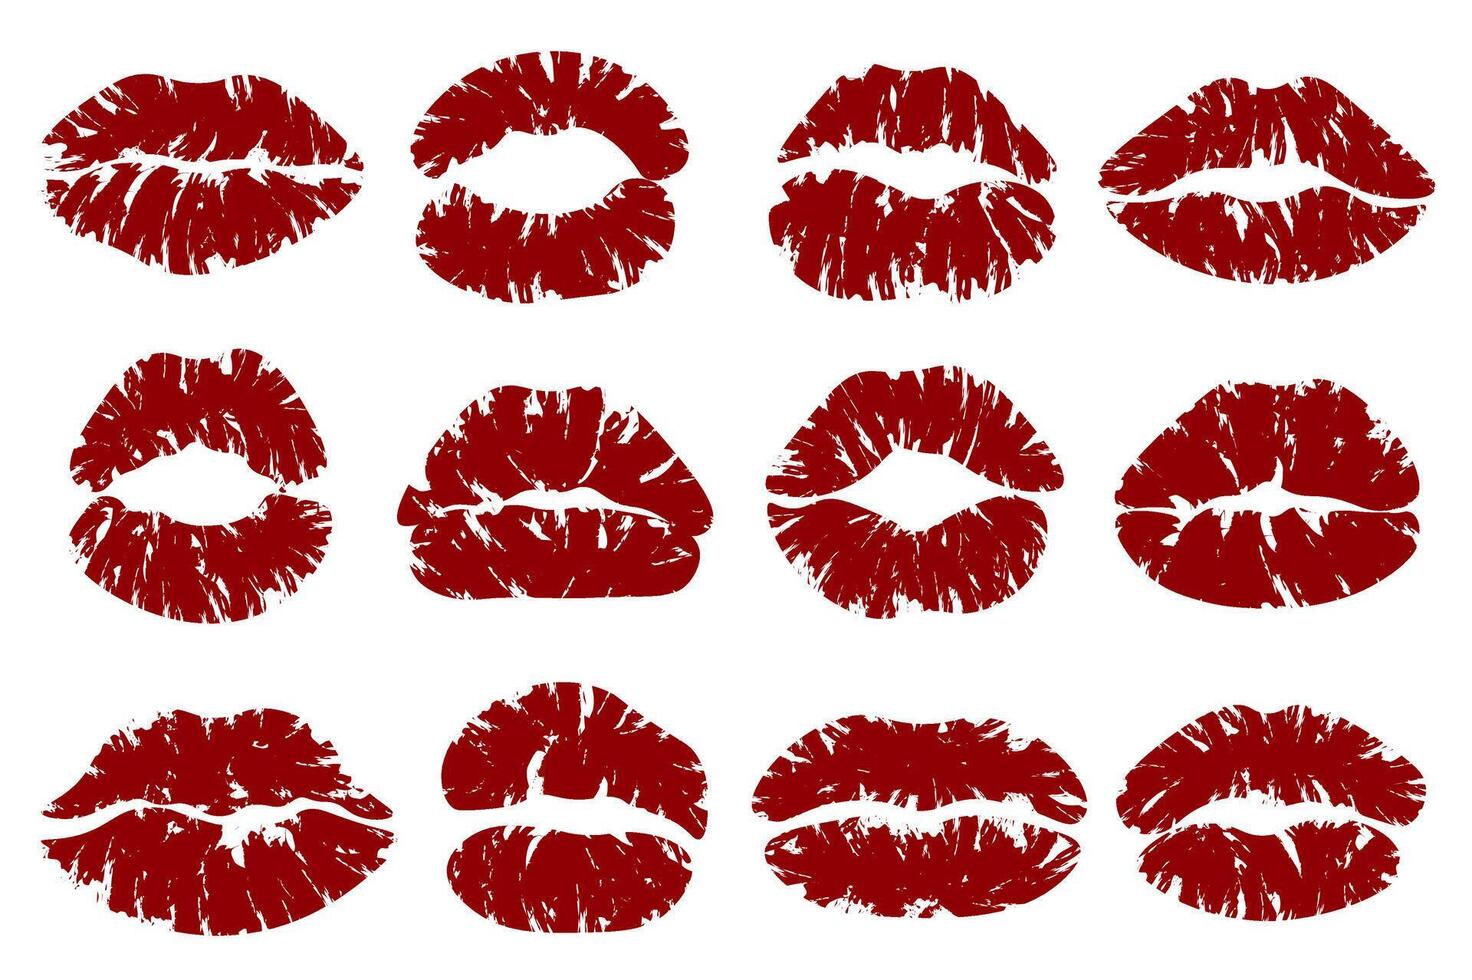 baiser lèvres impressions méga ensemble dans plat conception. paquet éléments de rouge femelle rouge à lèvres formes et bouche silhouettes avec grunge brosse texture pour romantique décor. vecteur illustration isolé graphique objets